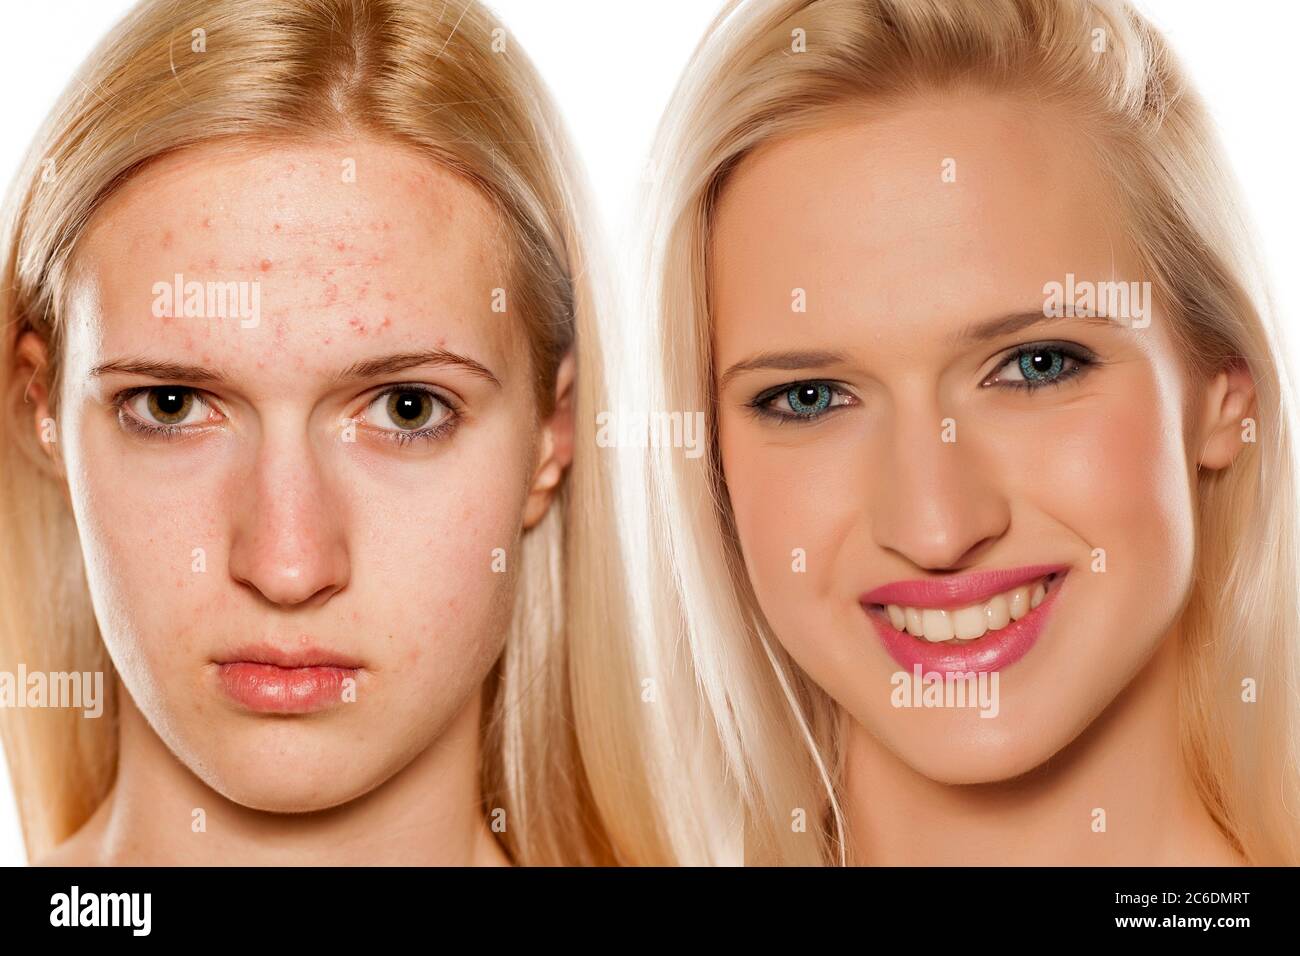 Ritratto comparativo del viso femminile, prima e dopo il trattamento cosmetico Foto Stock